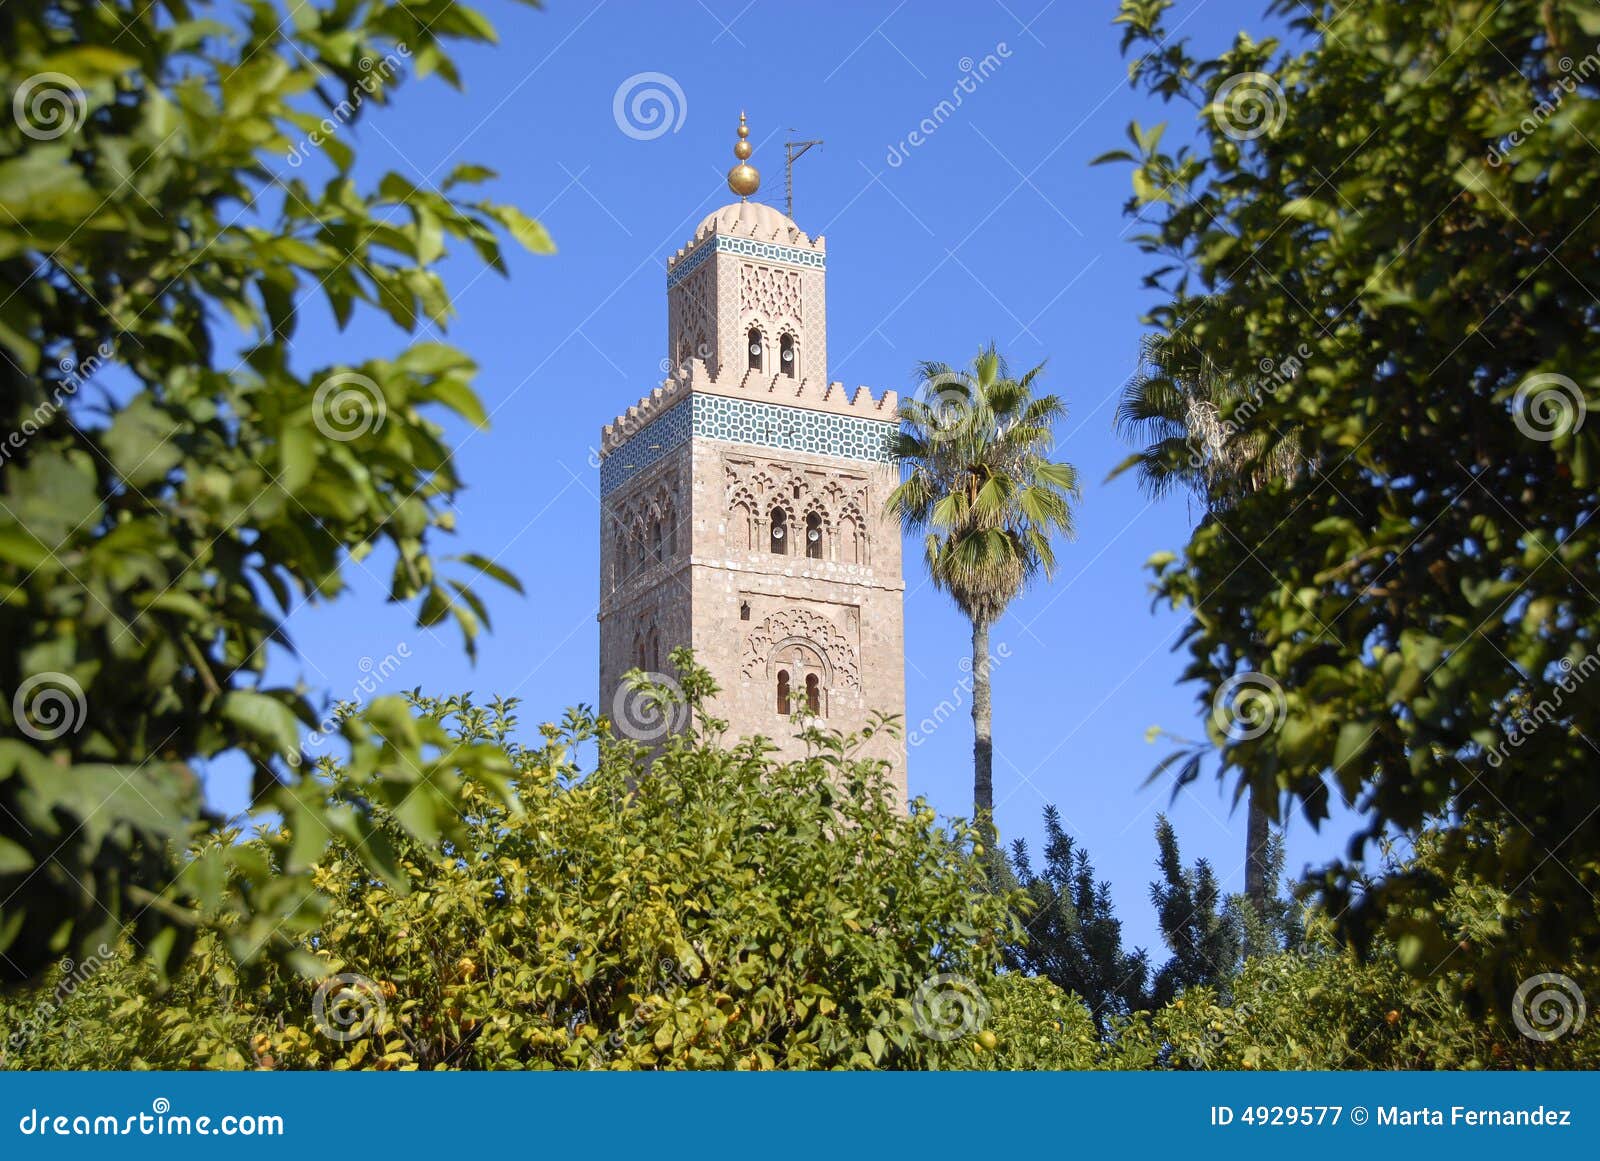 marrakech, morocco